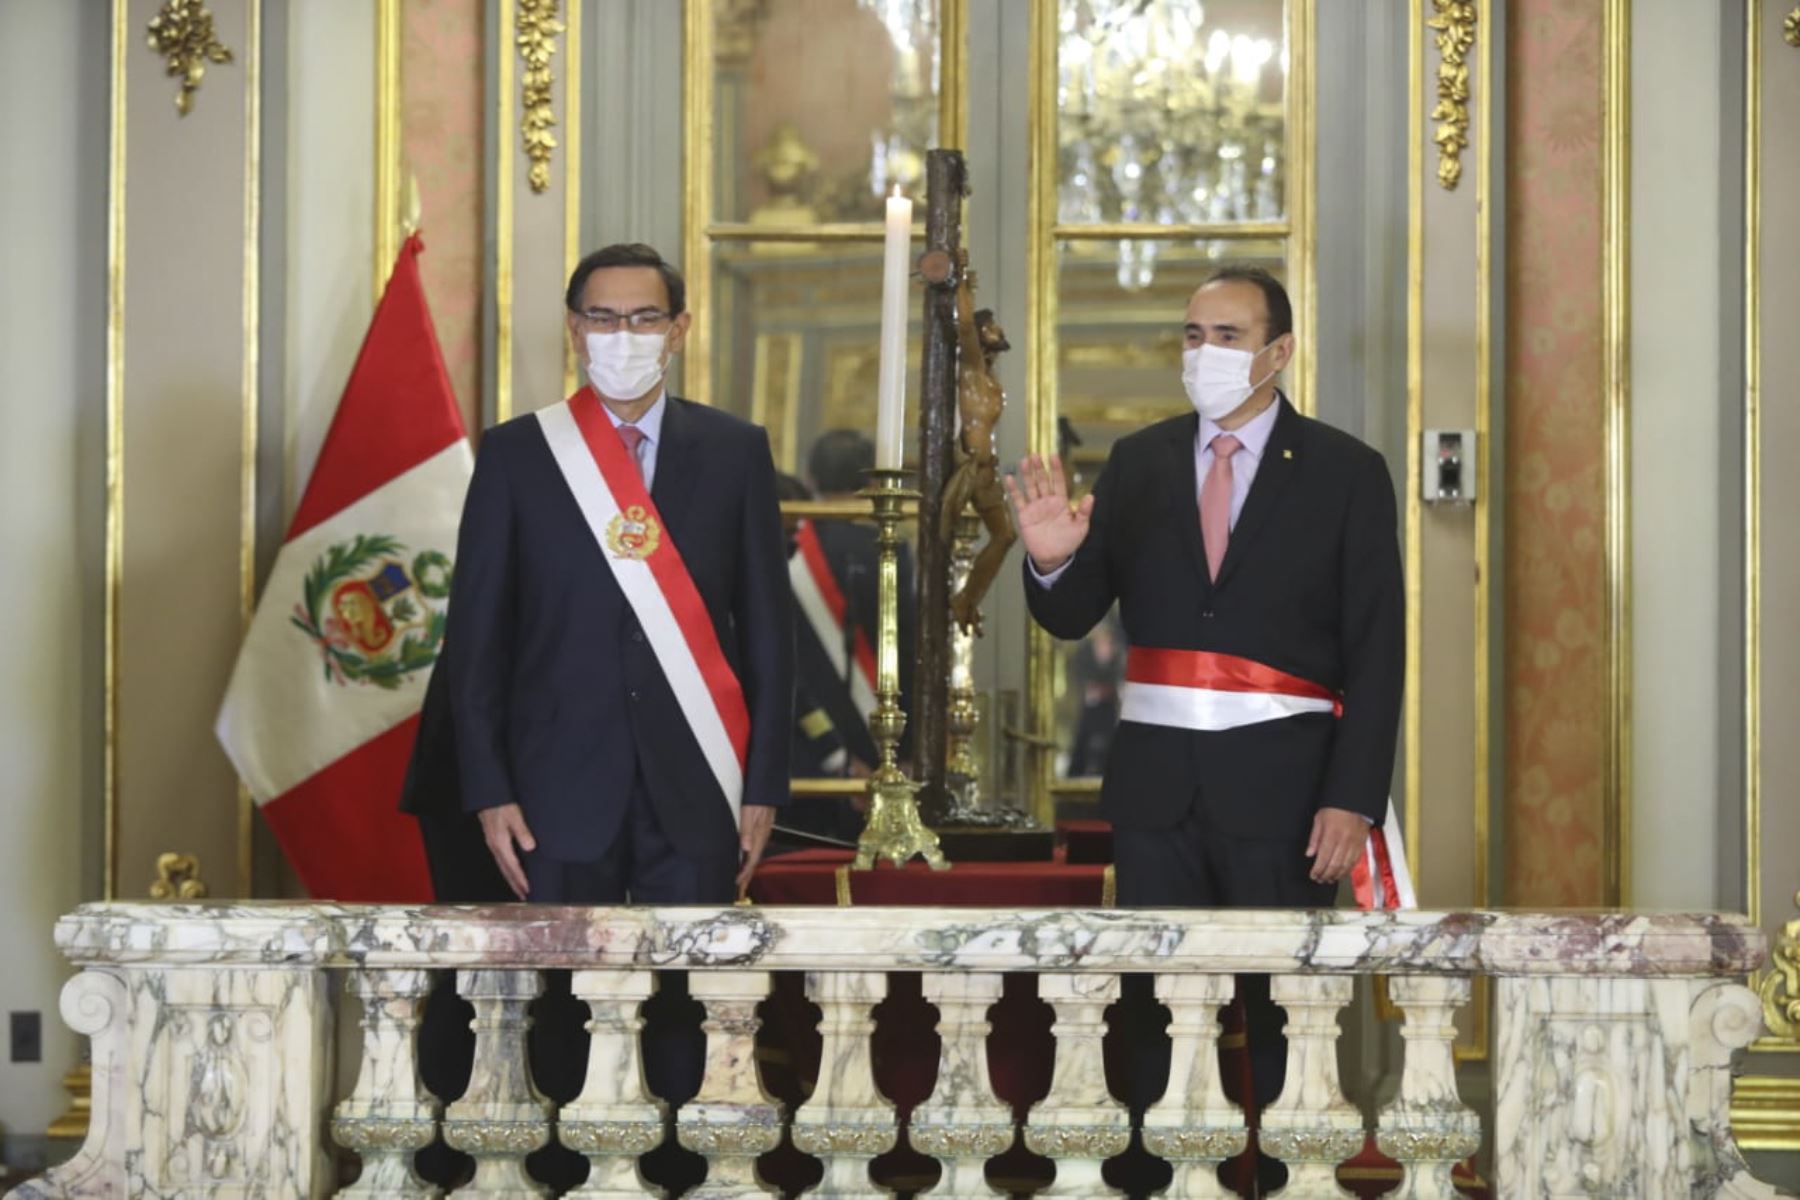 El presidente de la República, Martín Vizcarra, toma juramento a Carlos Estremadoyro Mory como ministro de transportes y comunicaciones. Foto: ANDINA/ Prensa Presidencia